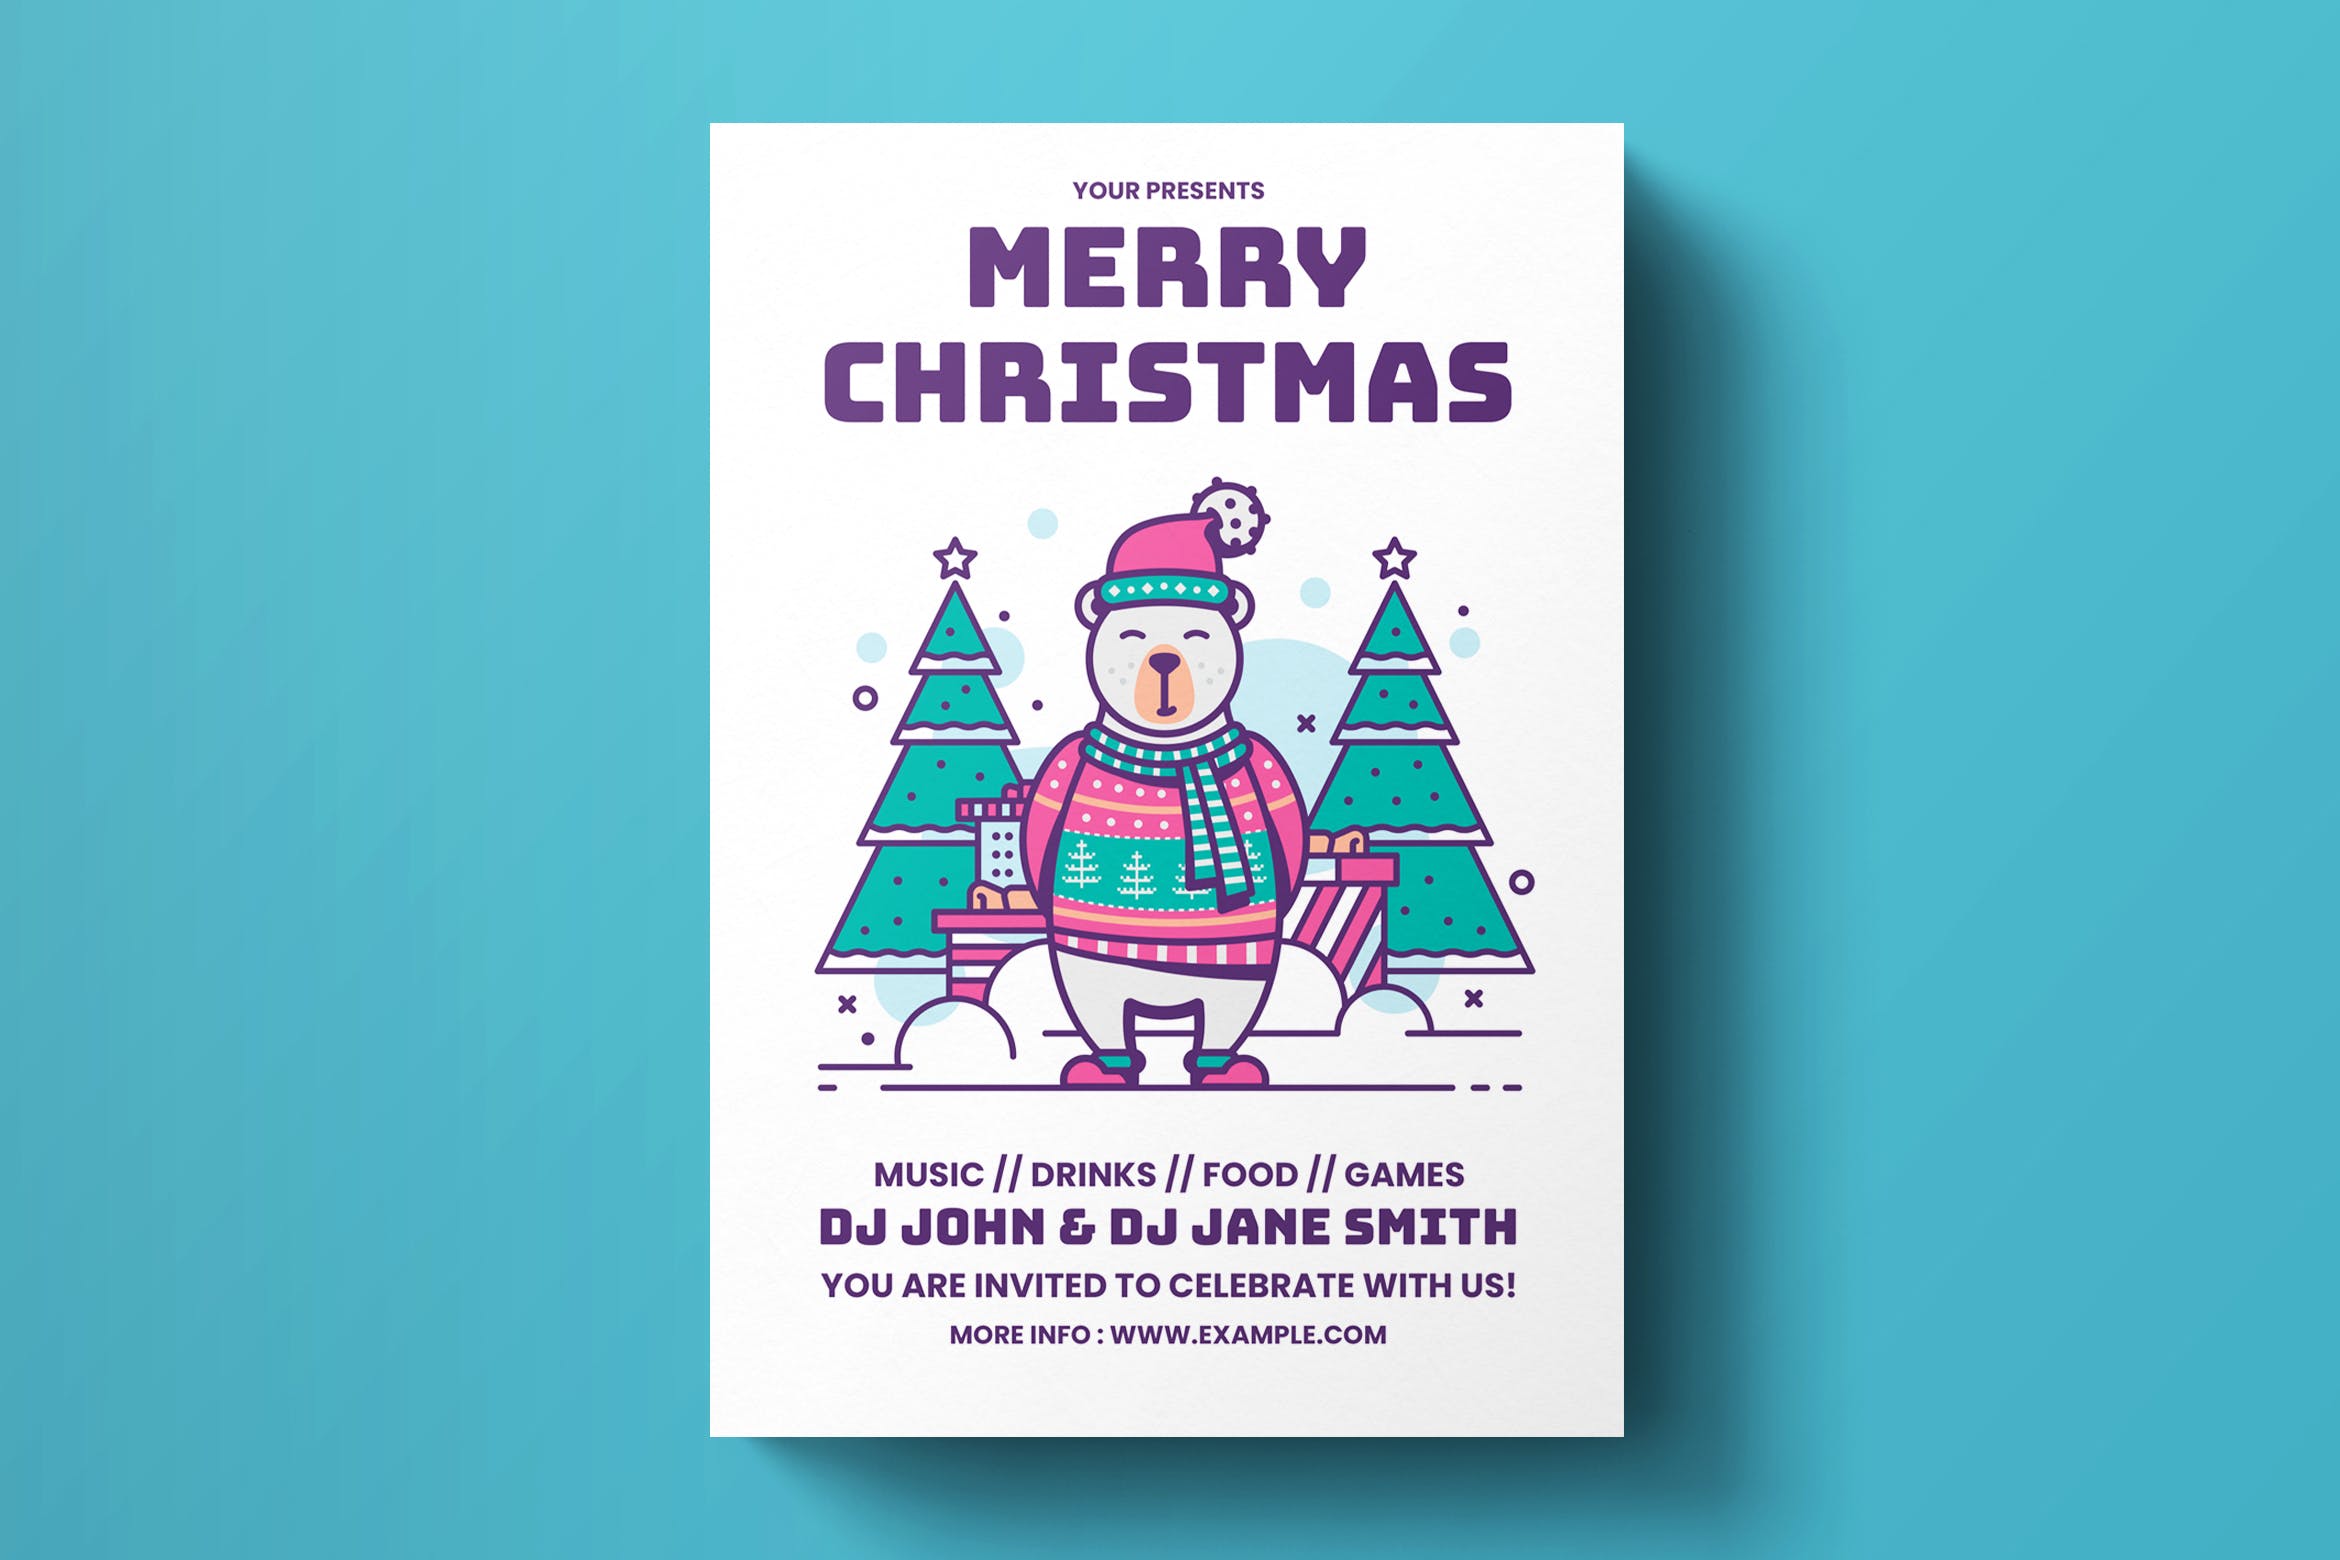 圣诞节音乐/美食/游戏活动派对海报传单设计模板 Christmas Flyer Template插图